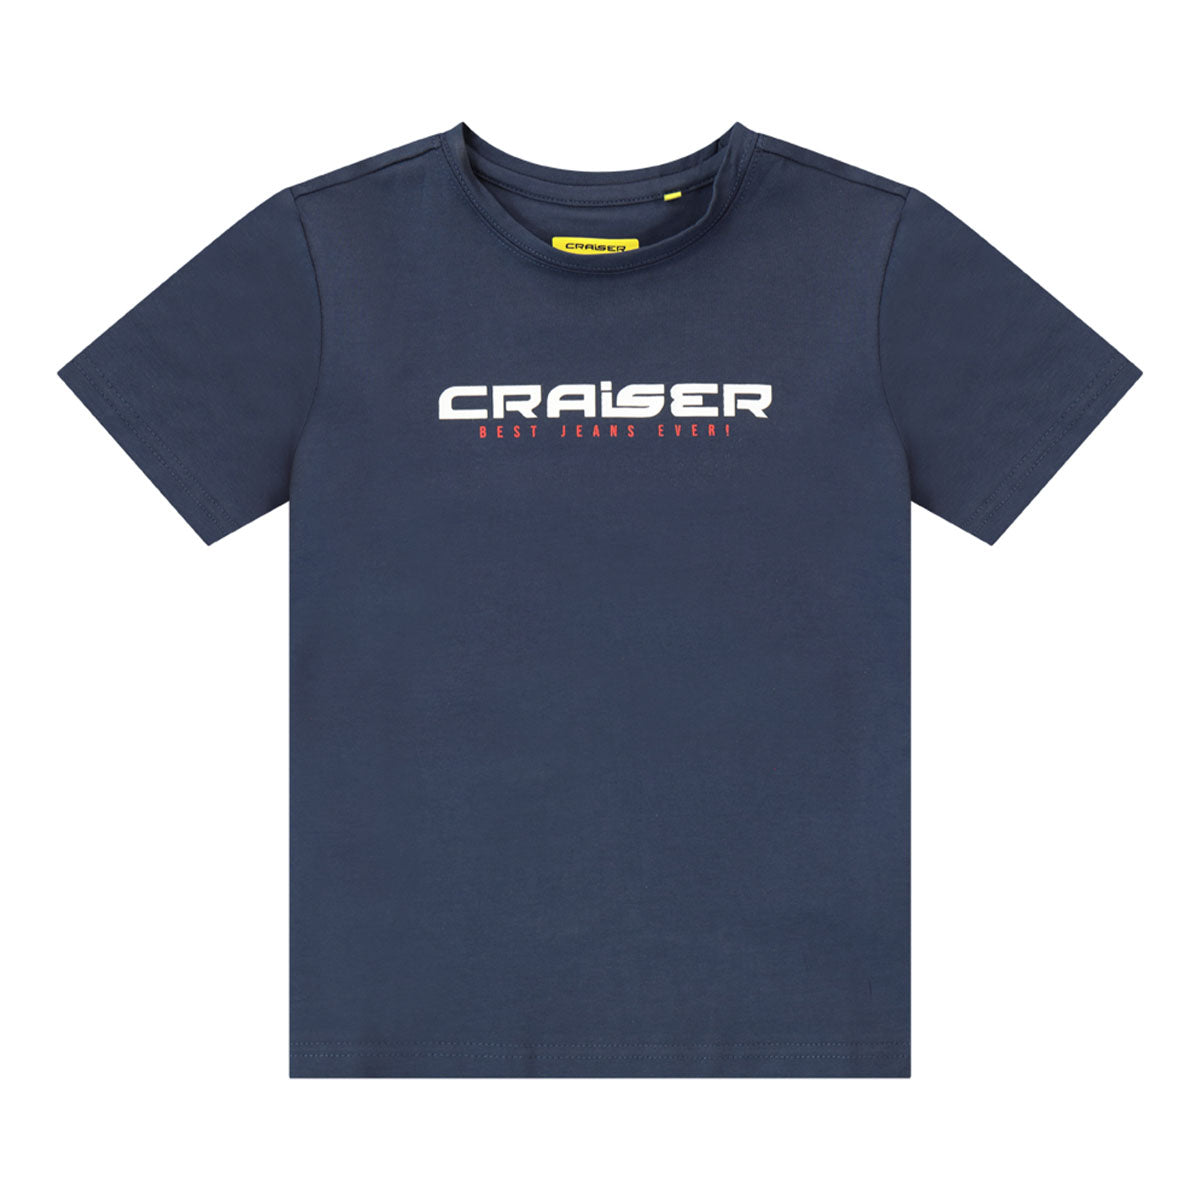 חולצת טי שרט CRAISER JEANS לילדים